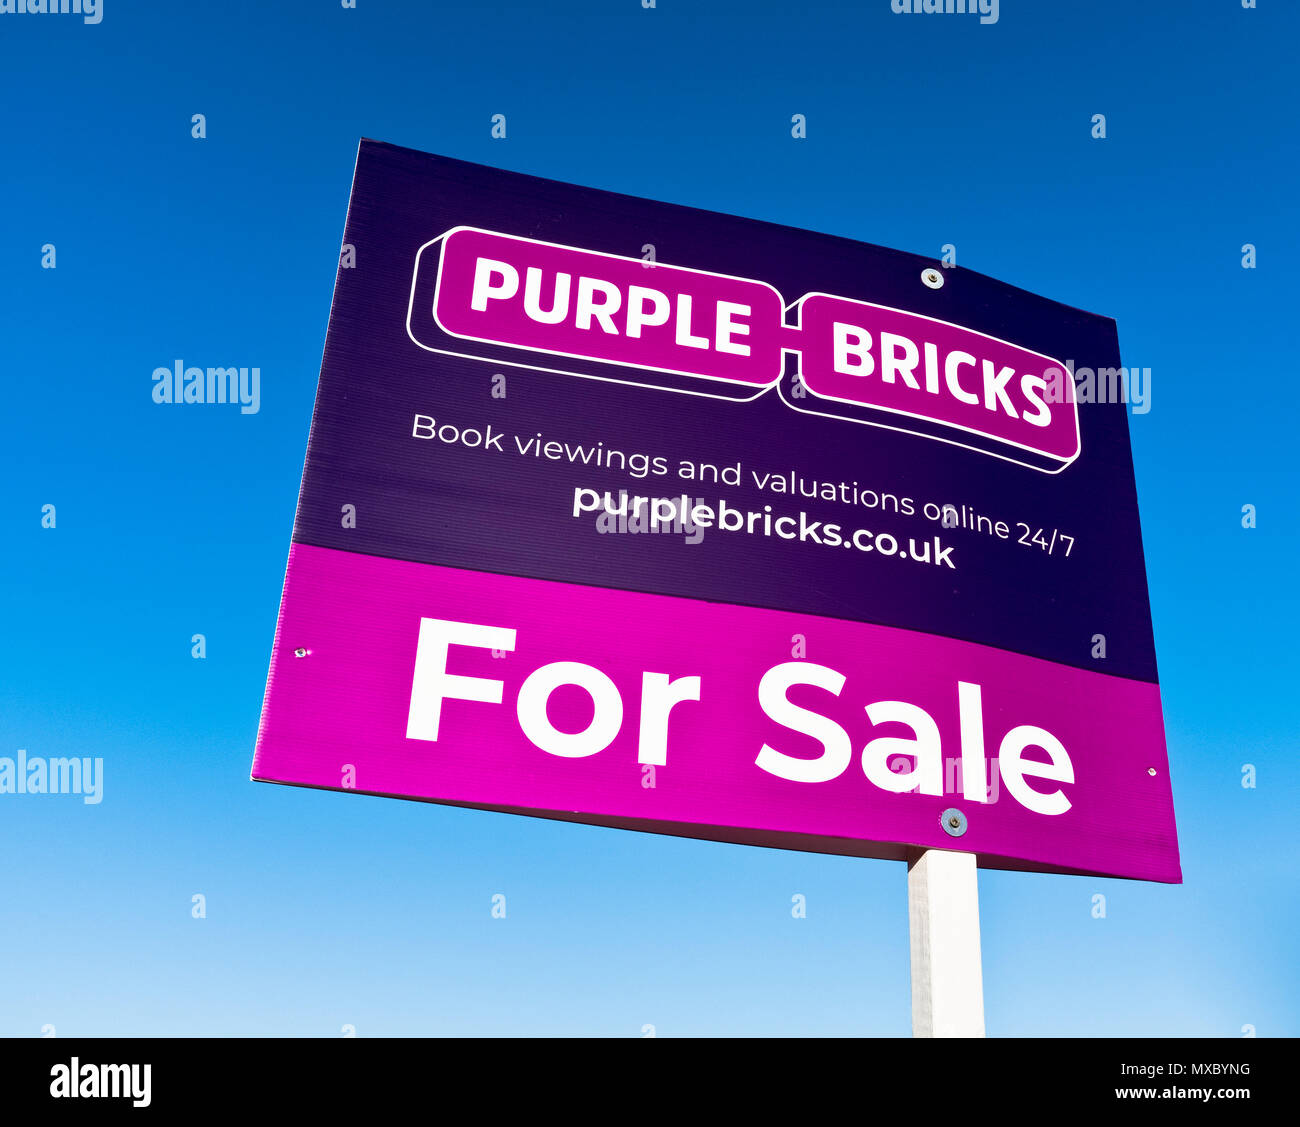 dh propriété à vendre LOGEMENT Royaume-Uni marché briques violet logement signe vendre des propriétés logo agents immobiliers maison agence signes Banque D'Images